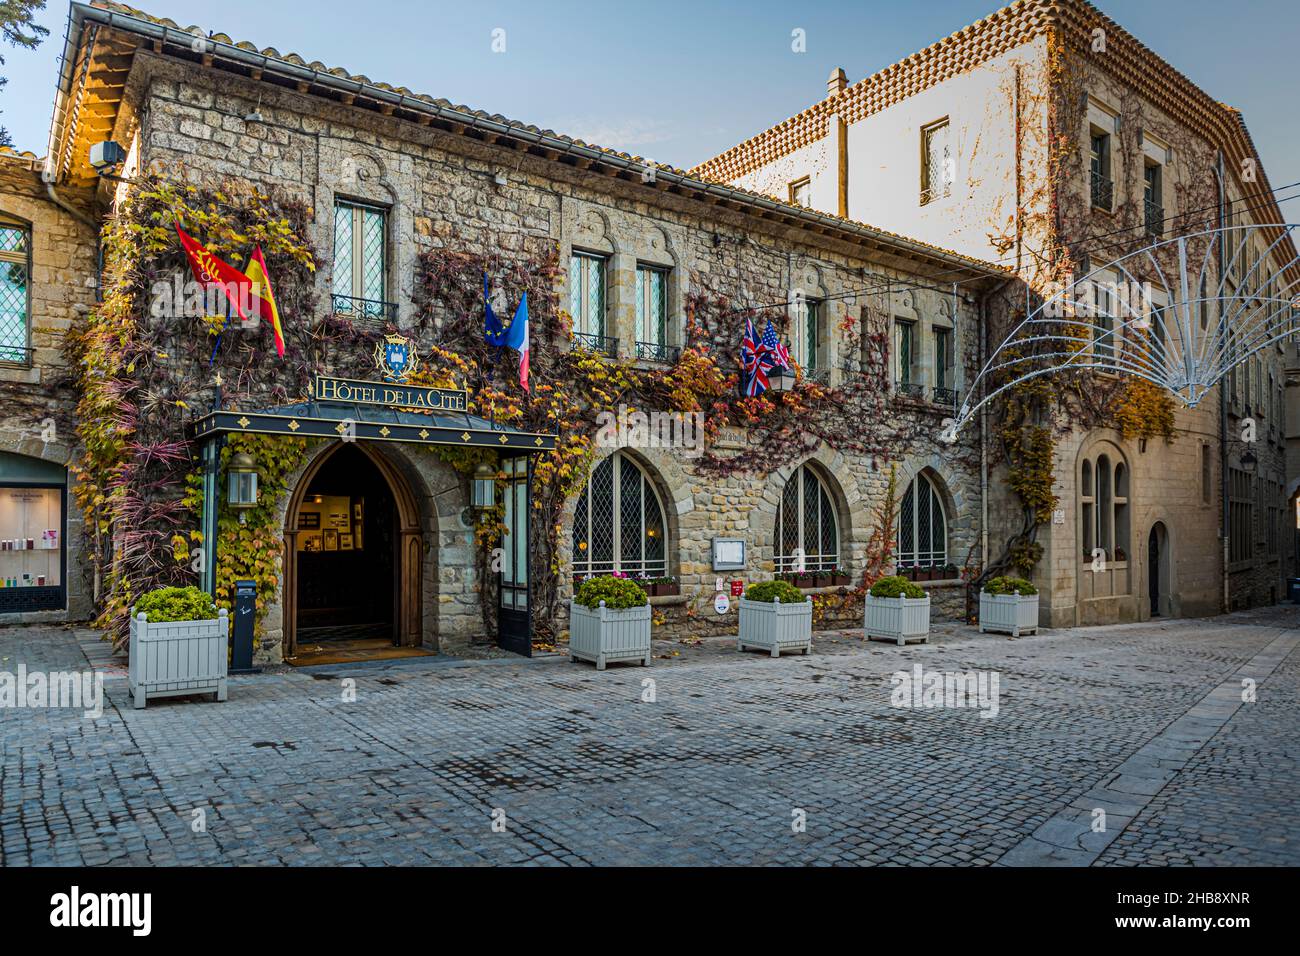 City Hotel (Hotel de la Cite) of Carcassonne, France Stock Photo